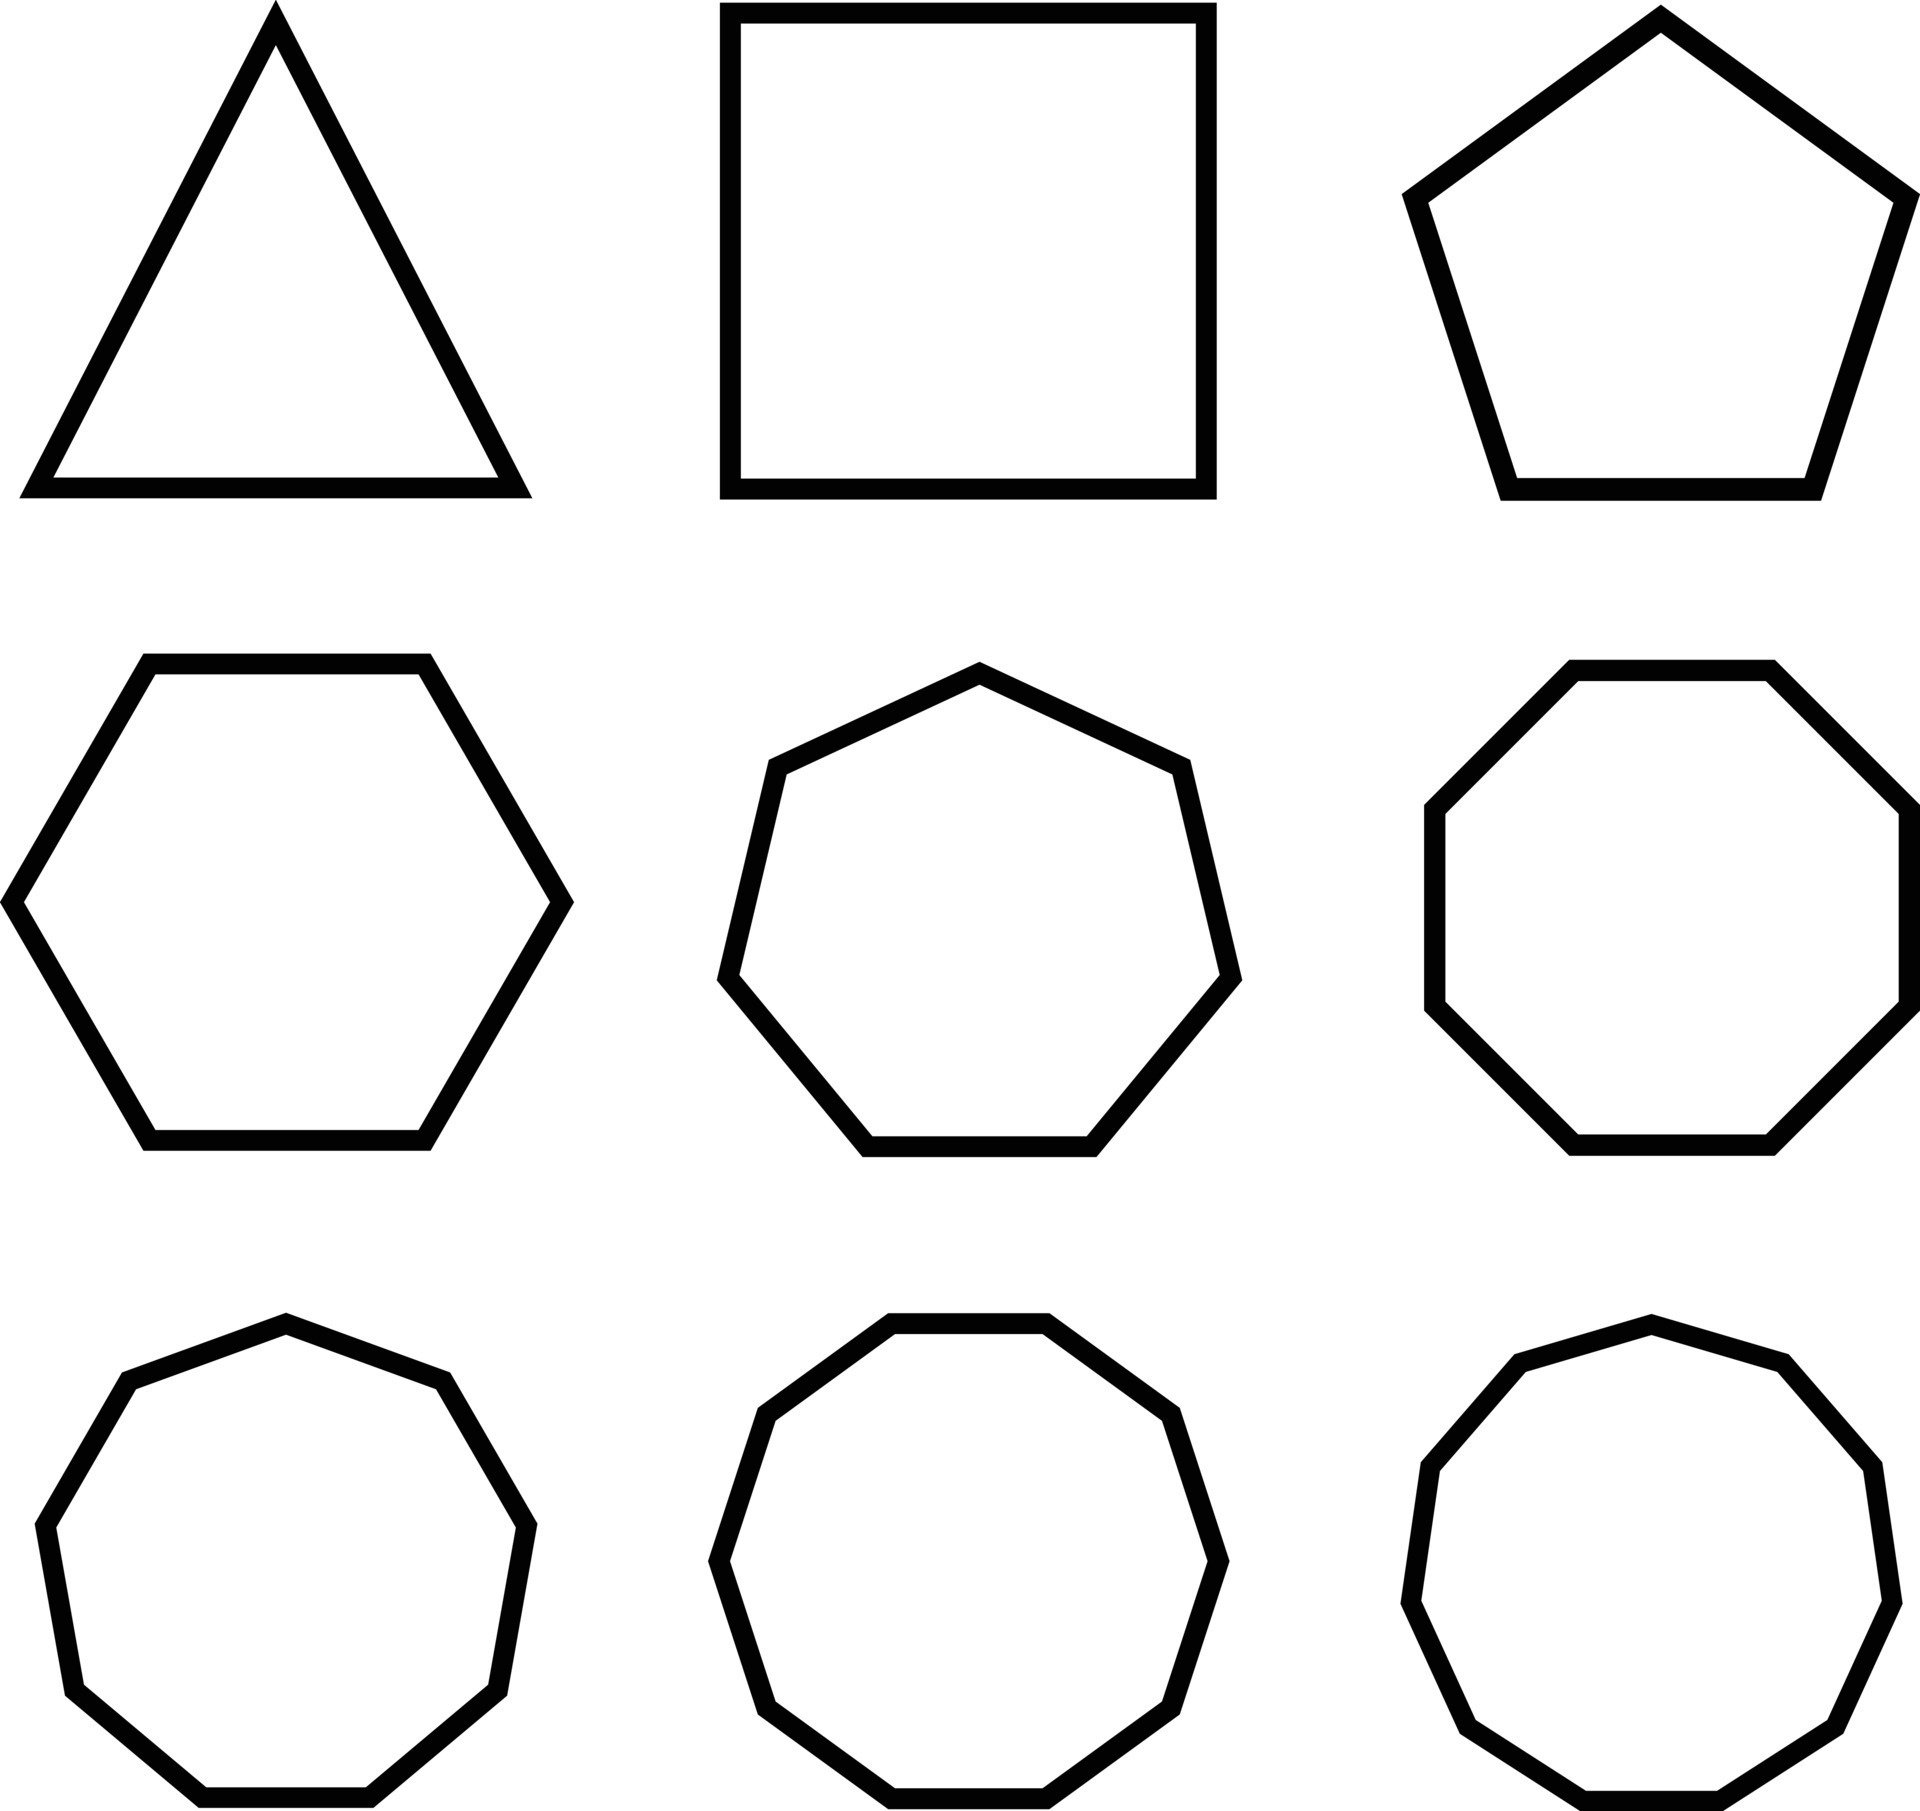 Вырезал из бумаги несколько пятиугольников и семиугольников